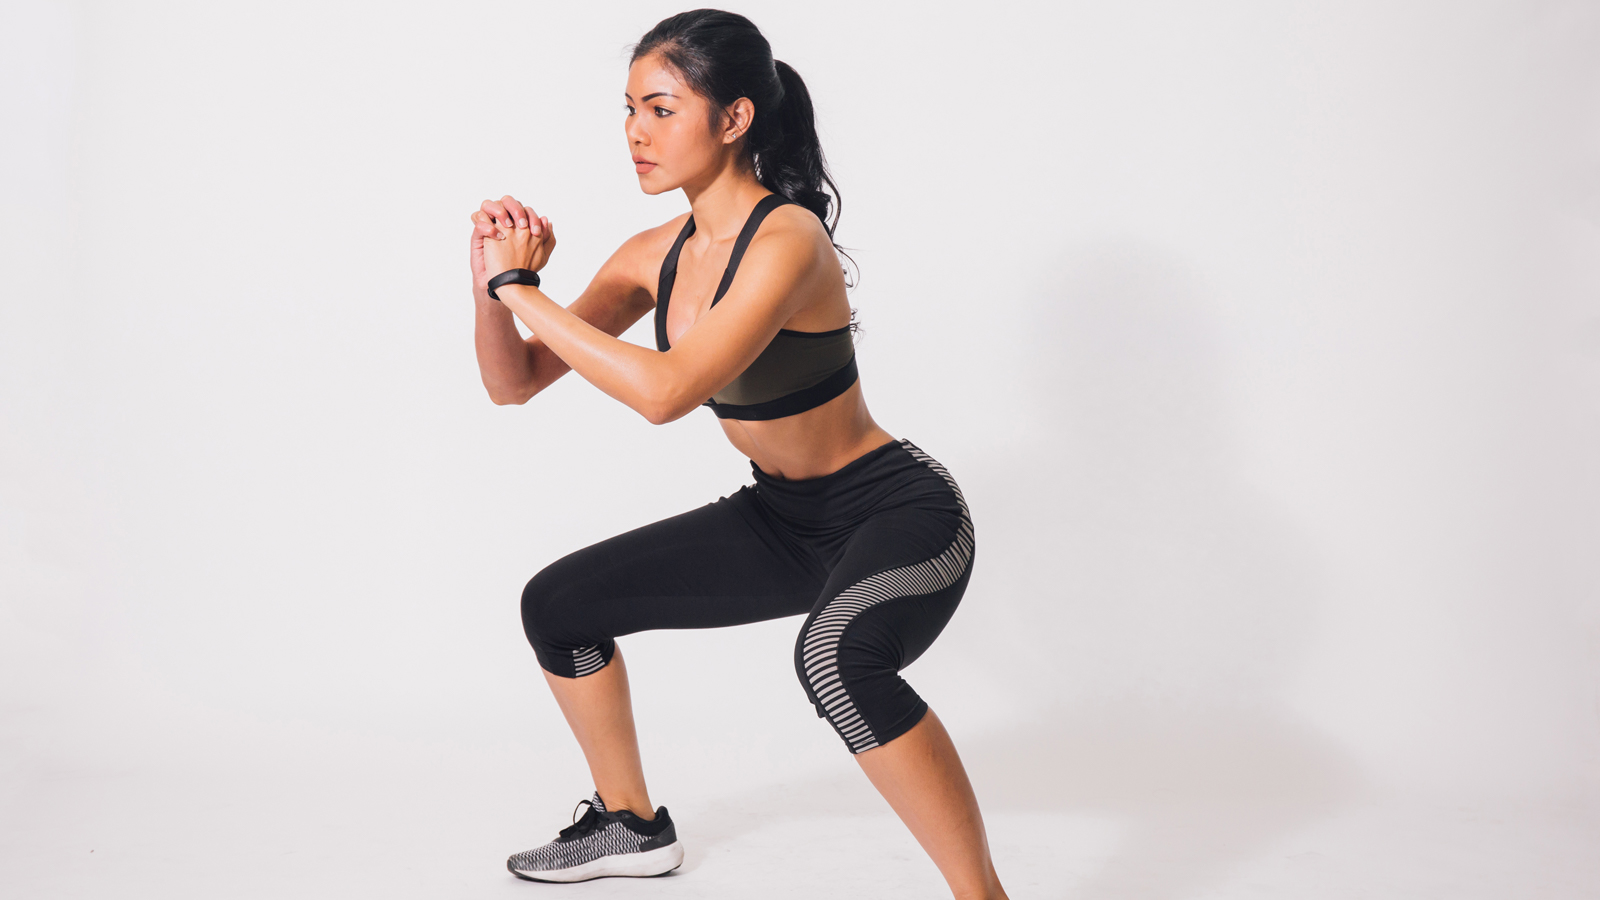 Những động tác squat đơn giản cũng có thể giúp vòng 2 săn chắc